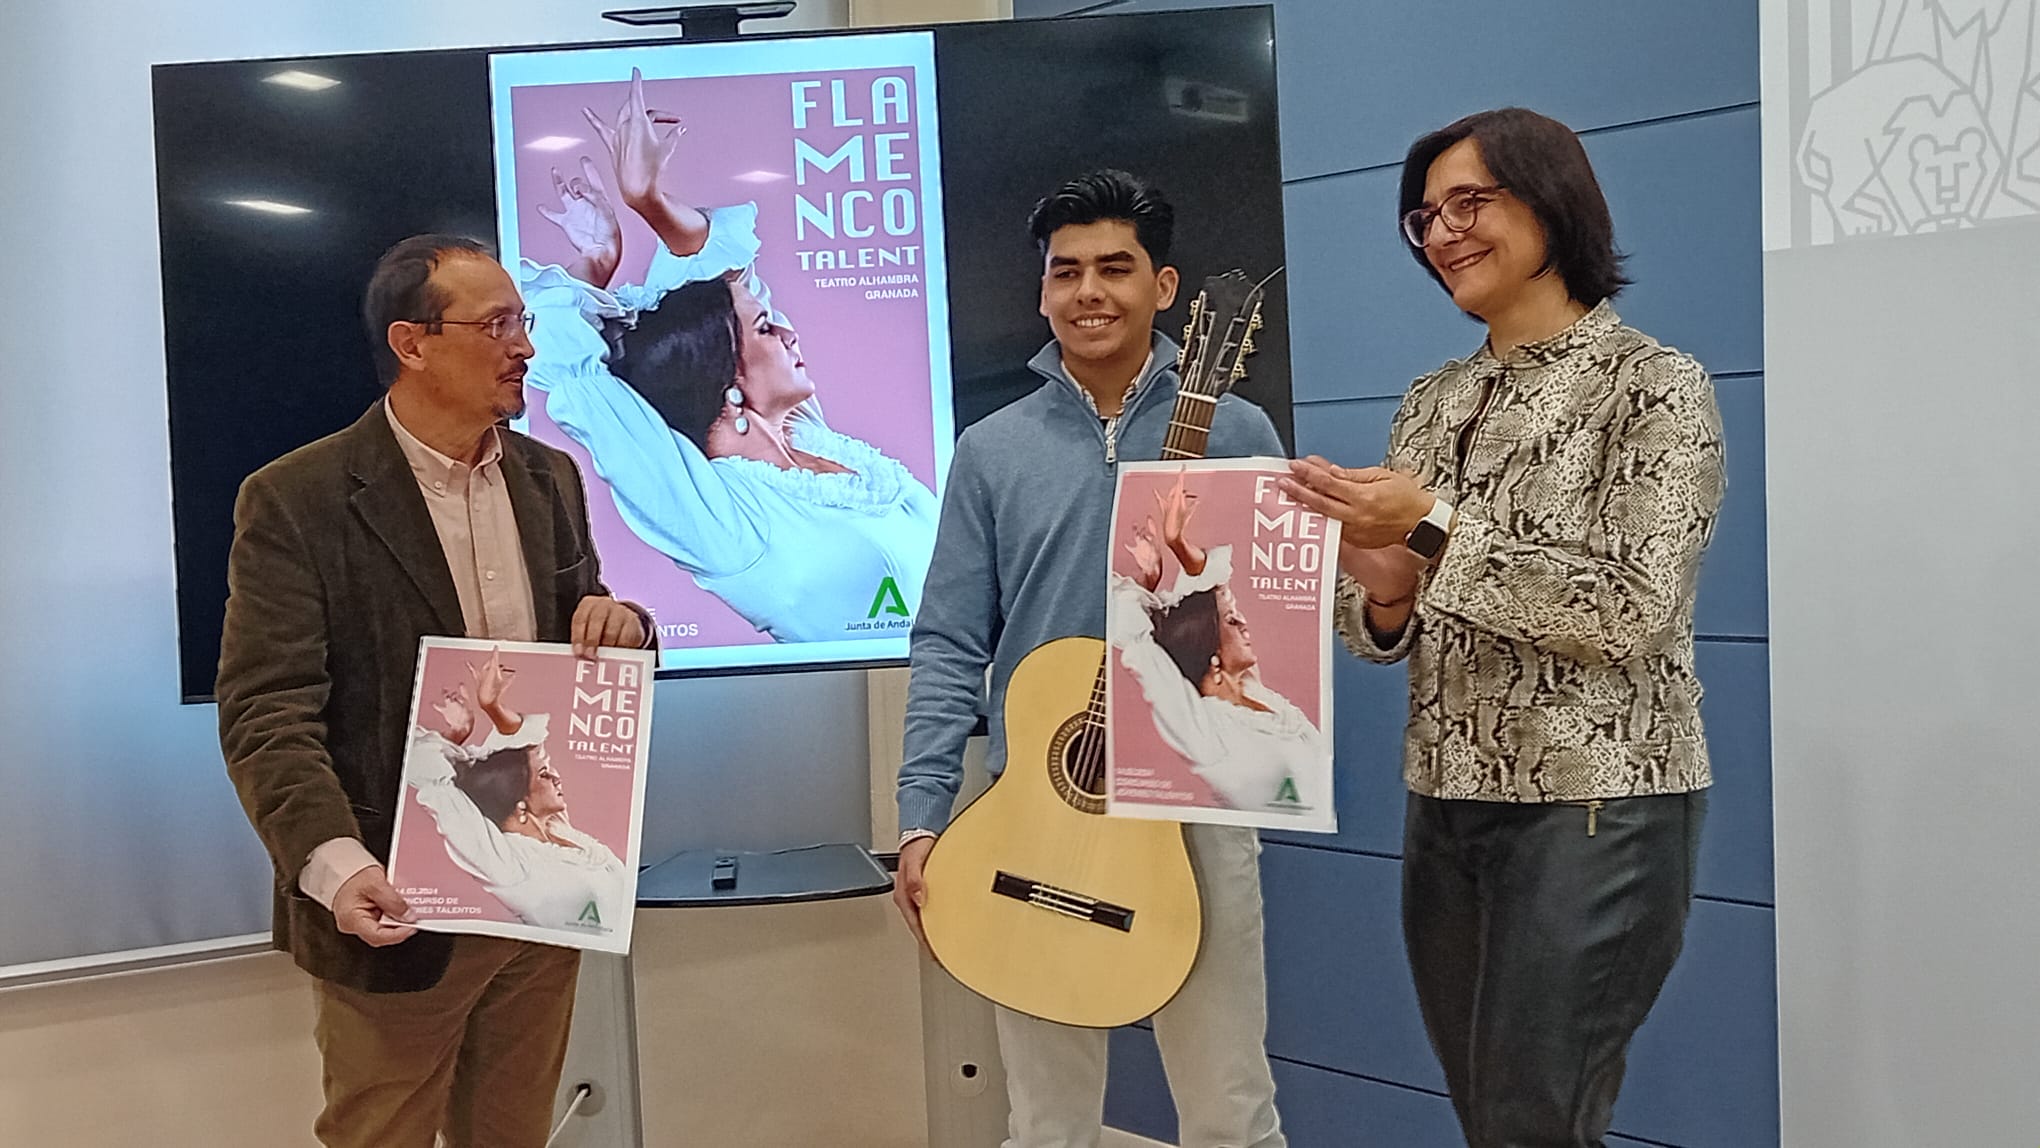 El II Concurso Flamenco Talent deja a Virginia Espallardo, en Infantil, y Joaquín Córdoba, en Juvenil, como ganadores